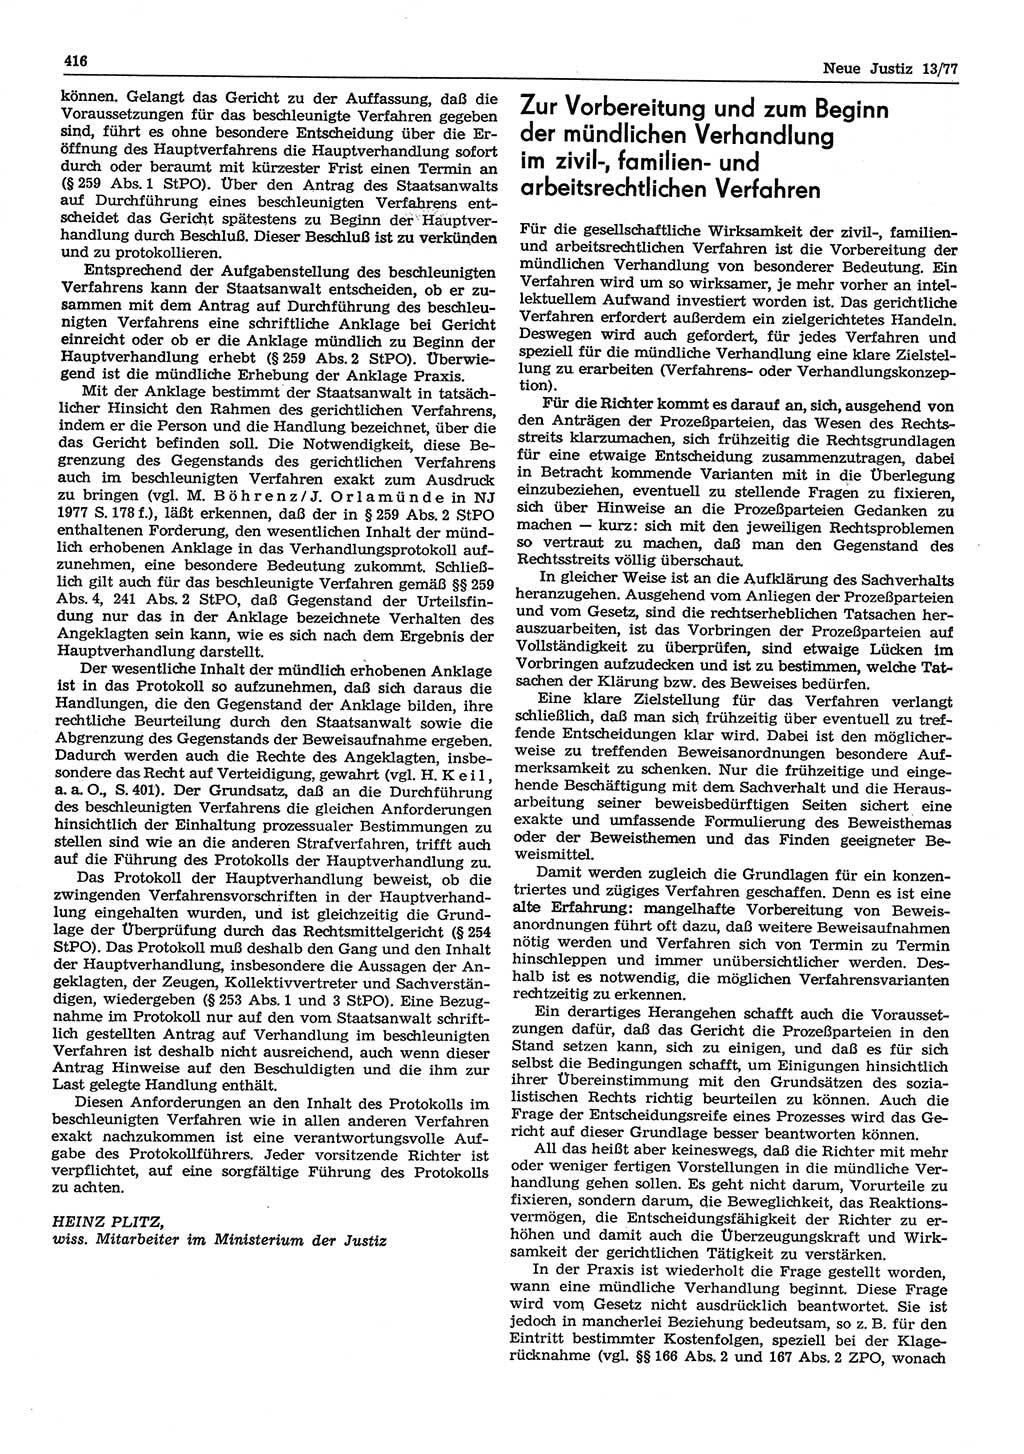 Neue Justiz (NJ), Zeitschrift für Recht und Rechtswissenschaft-Zeitschrift, sozialistisches Recht und Gesetzlichkeit, 31. Jahrgang 1977, Seite 416 (NJ DDR 1977, S. 416)